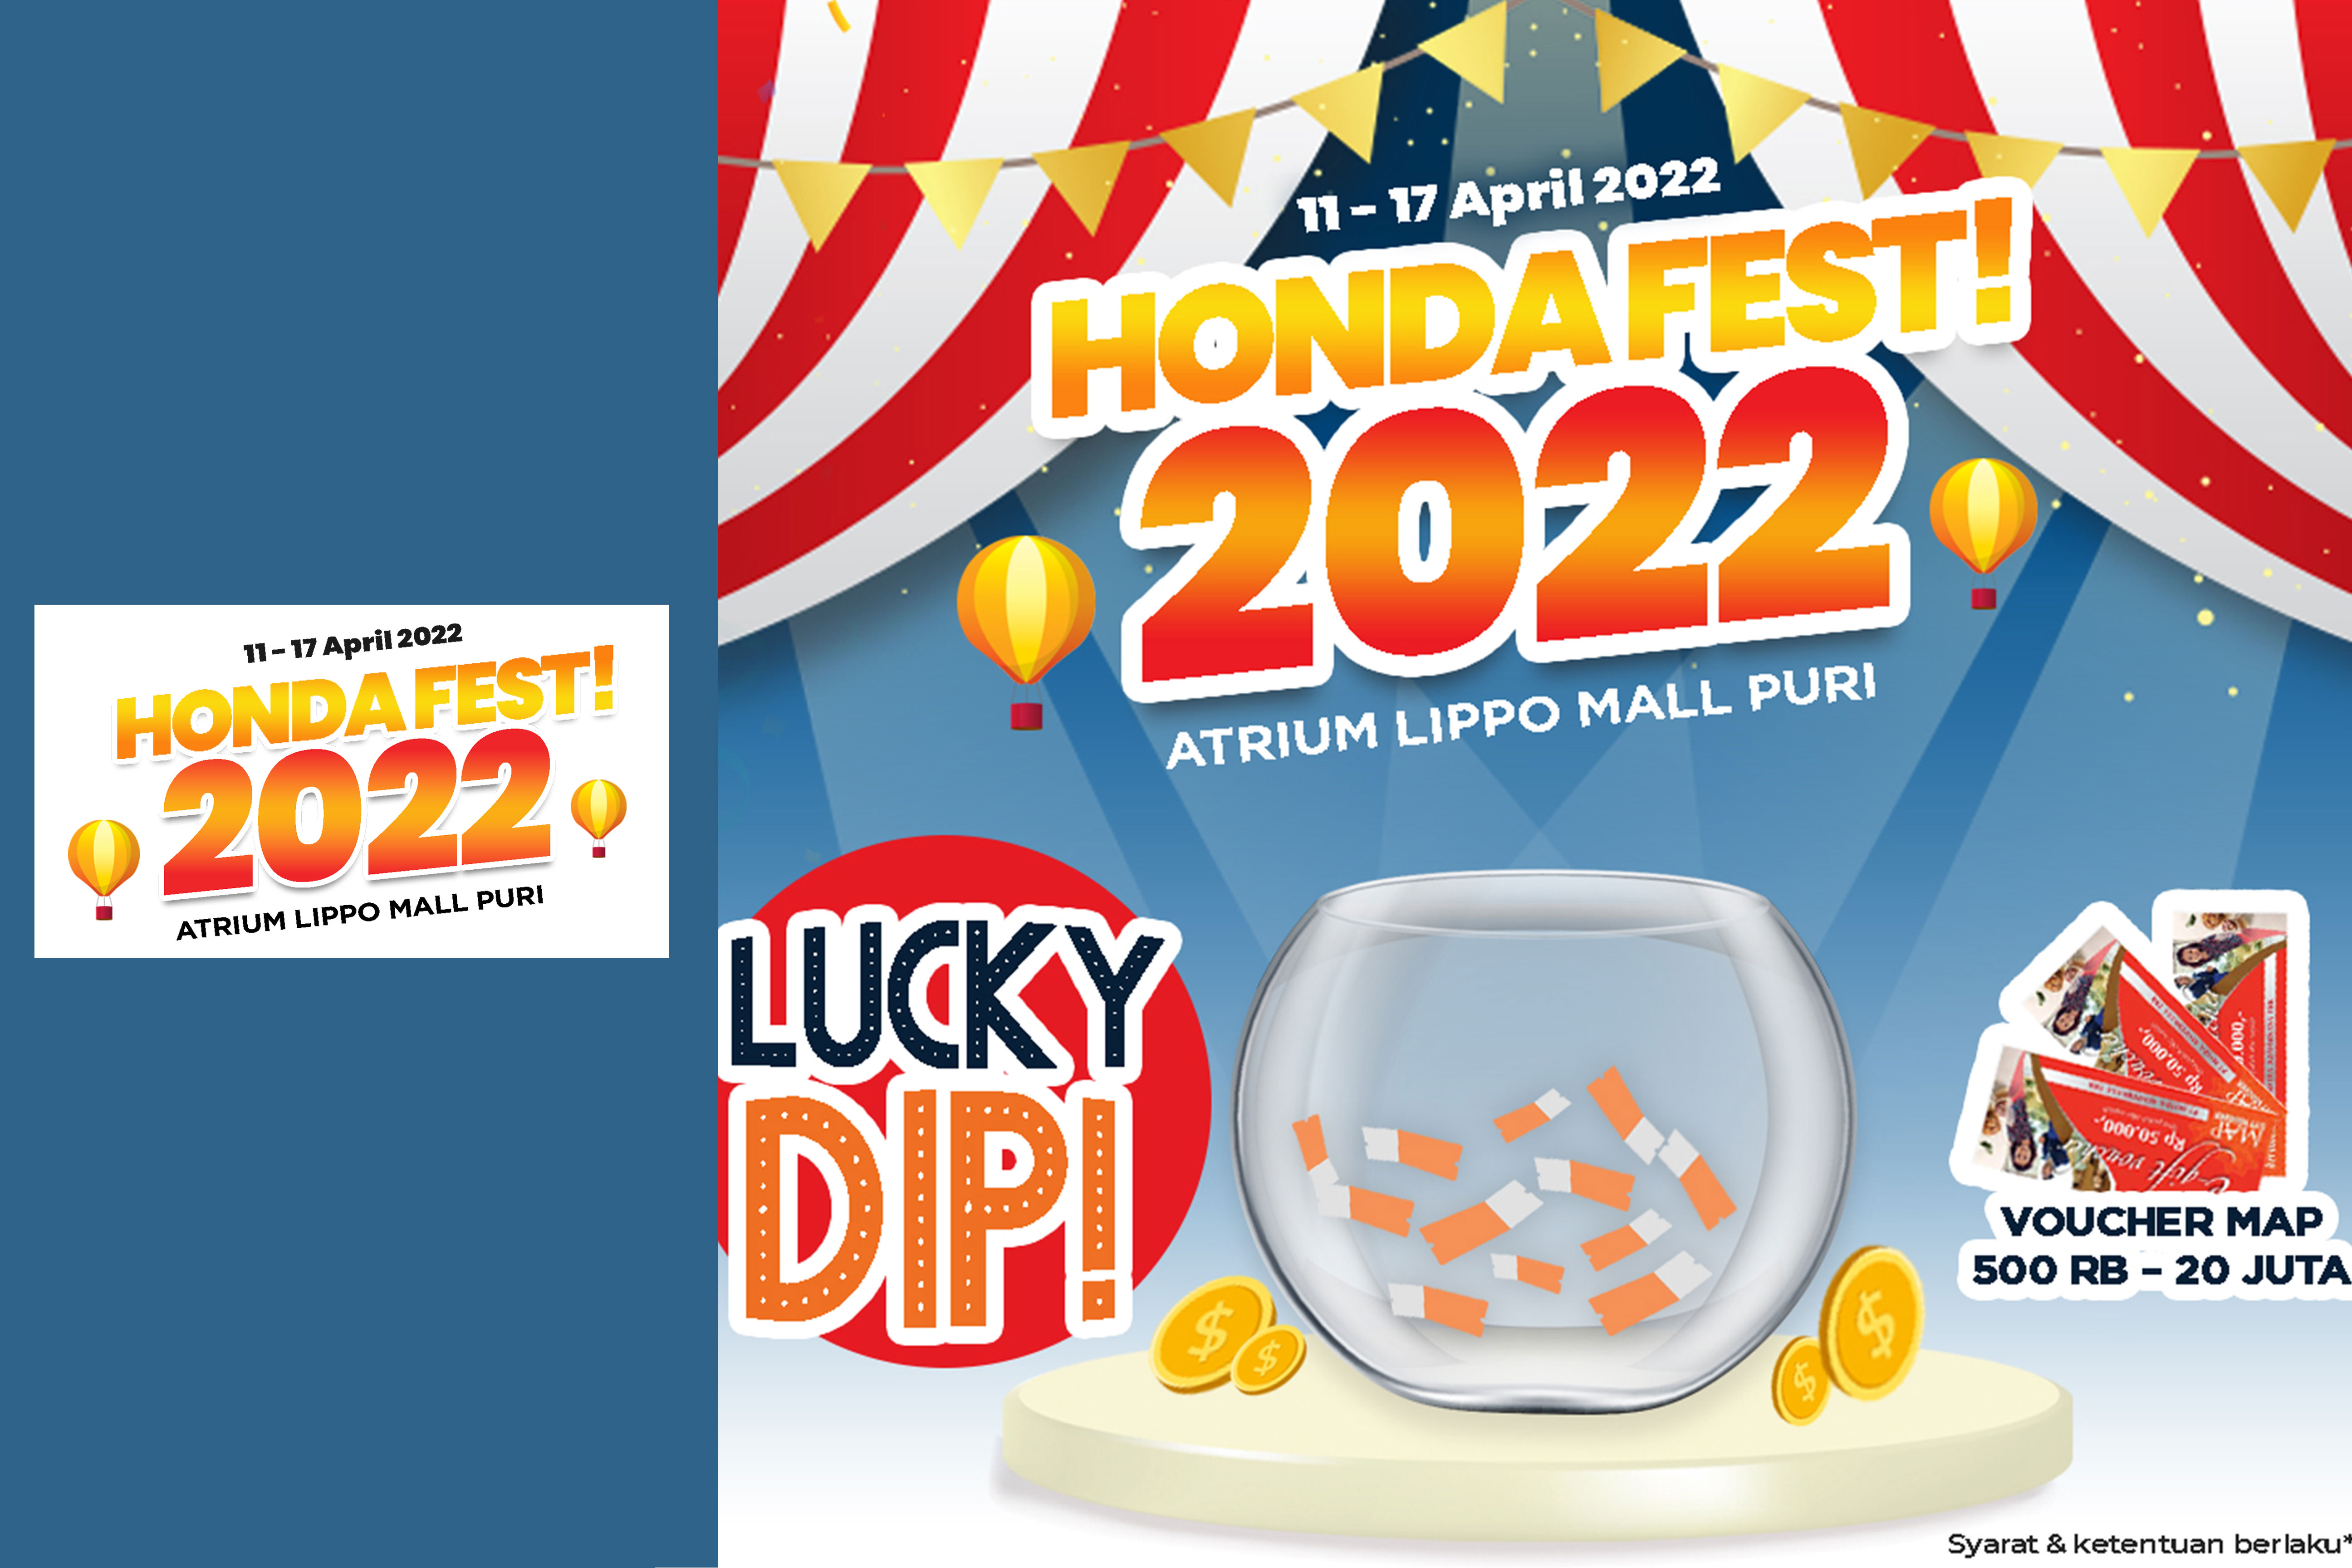 Honda Fest 2022